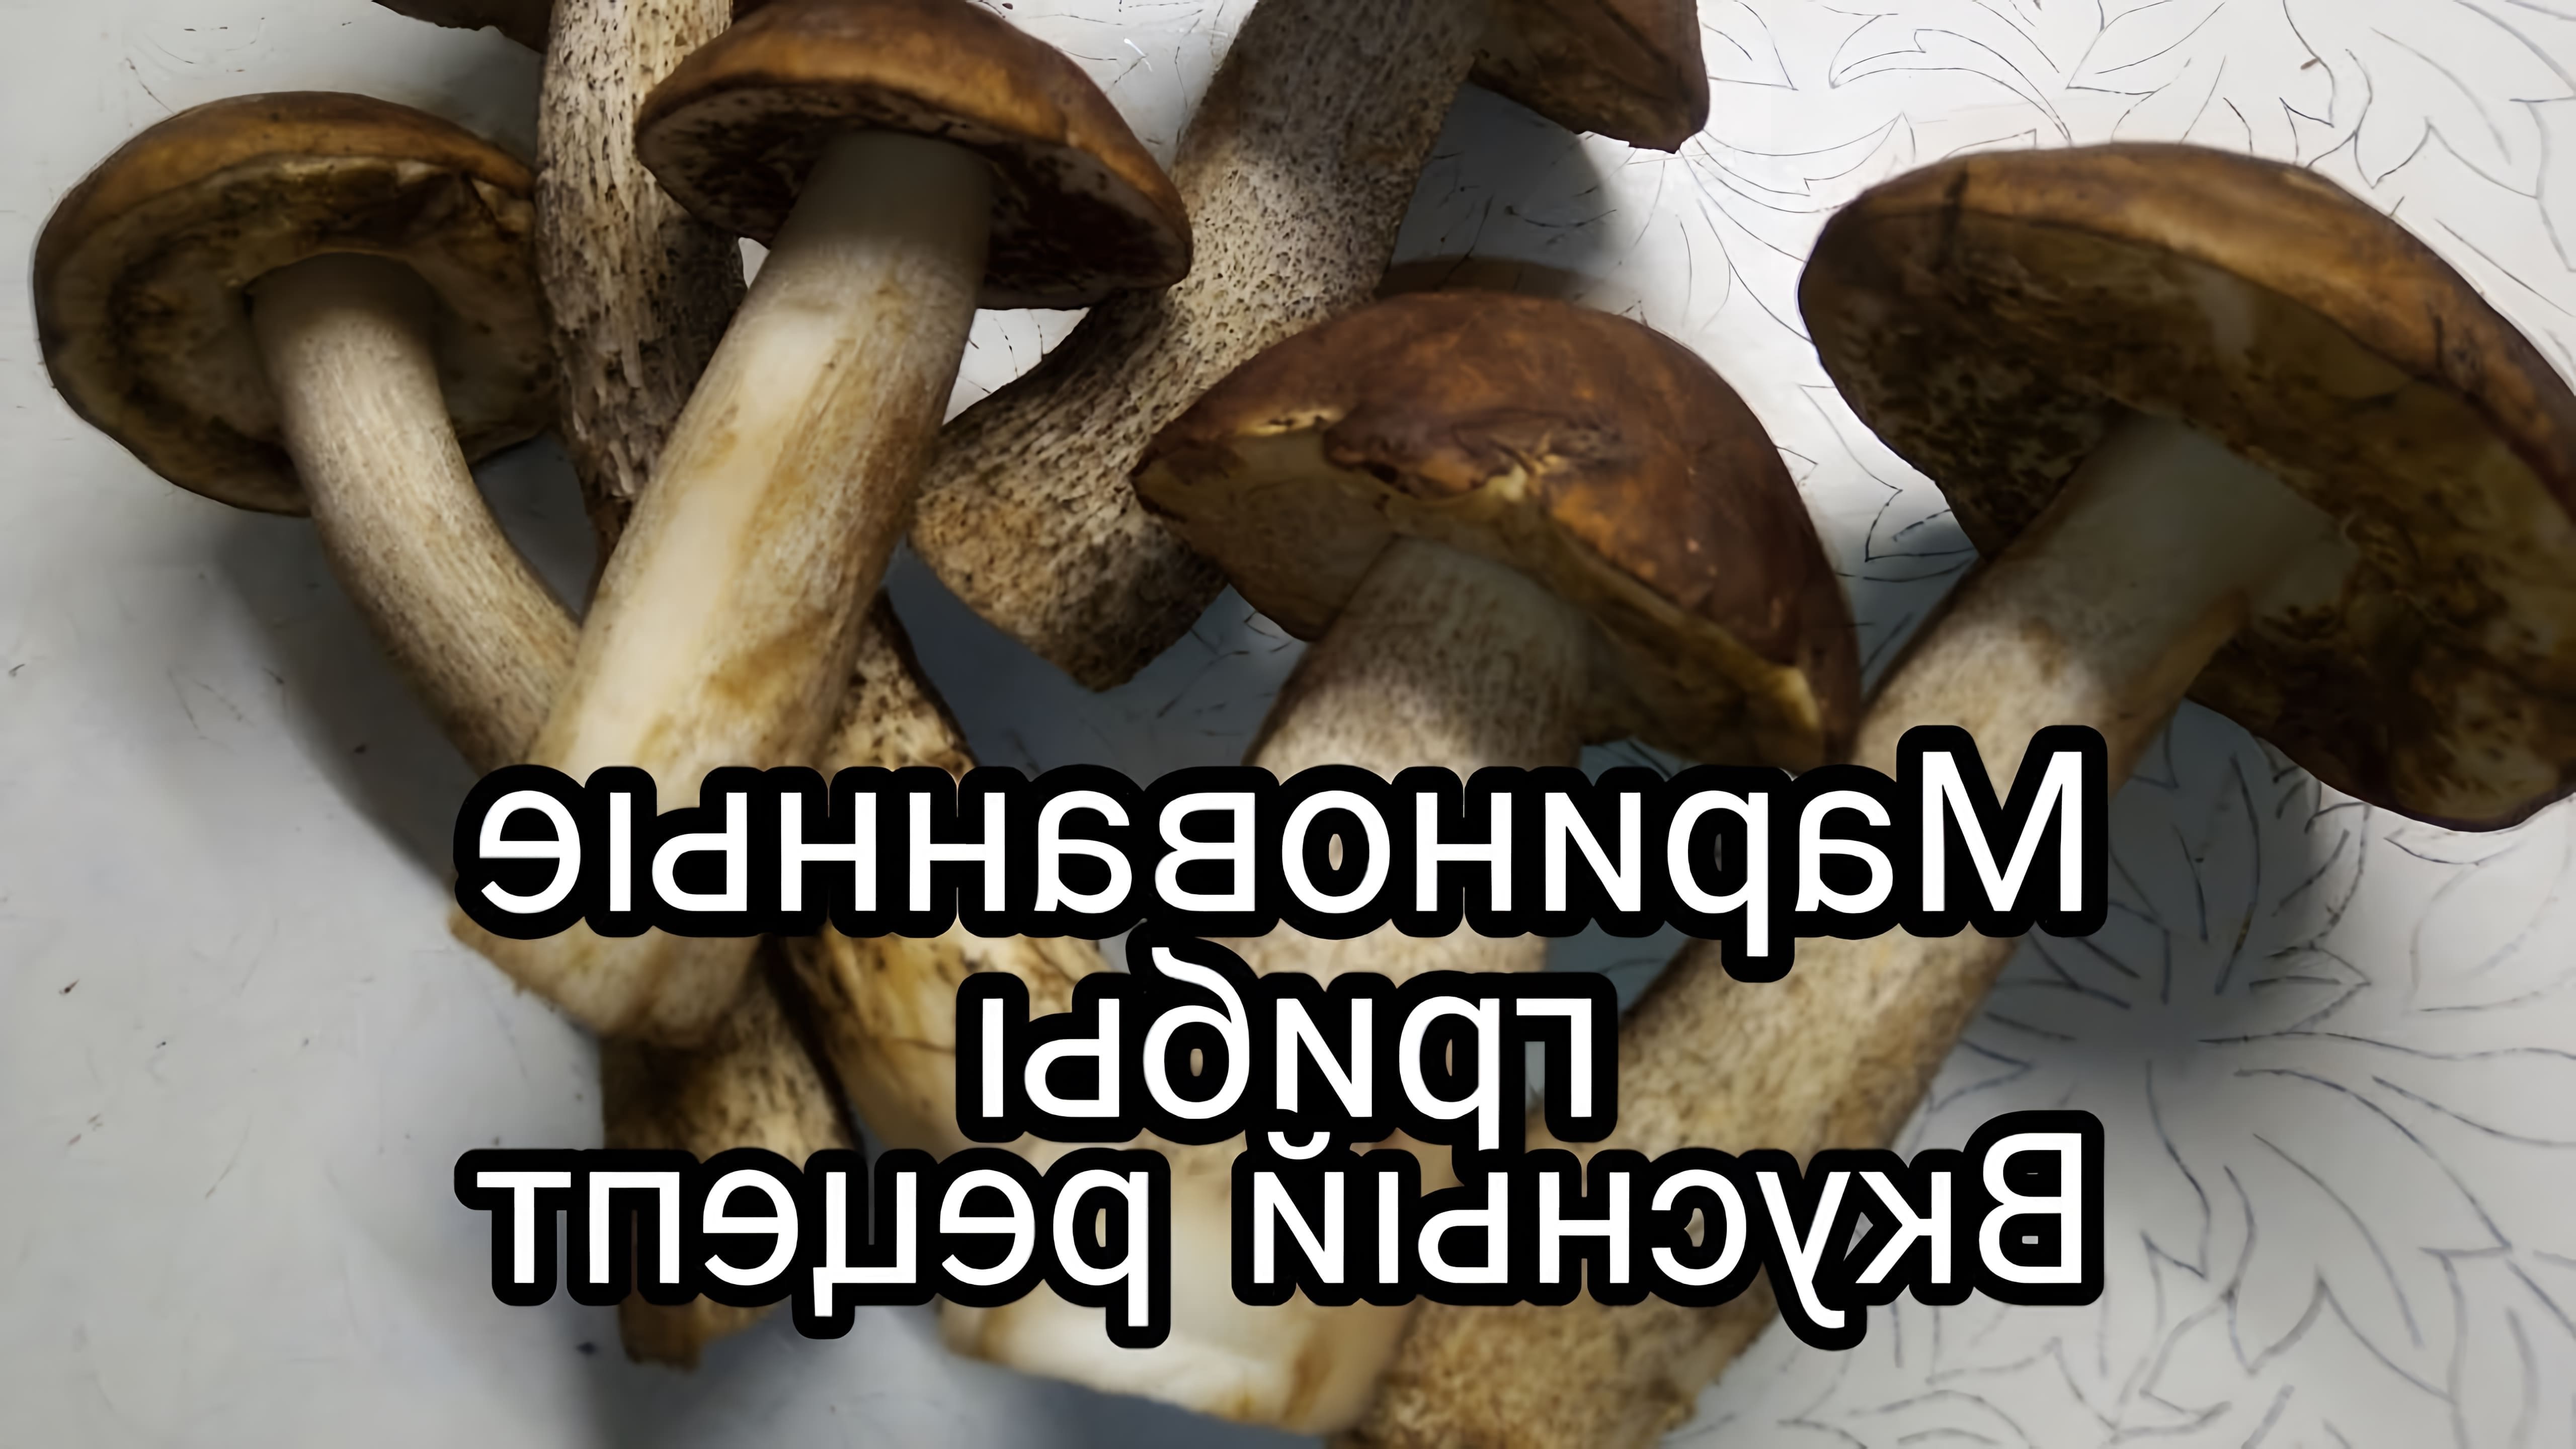 В этом видео демонстрируется процесс маринования грибов, таких как обабки, красноголовики и белые грибы